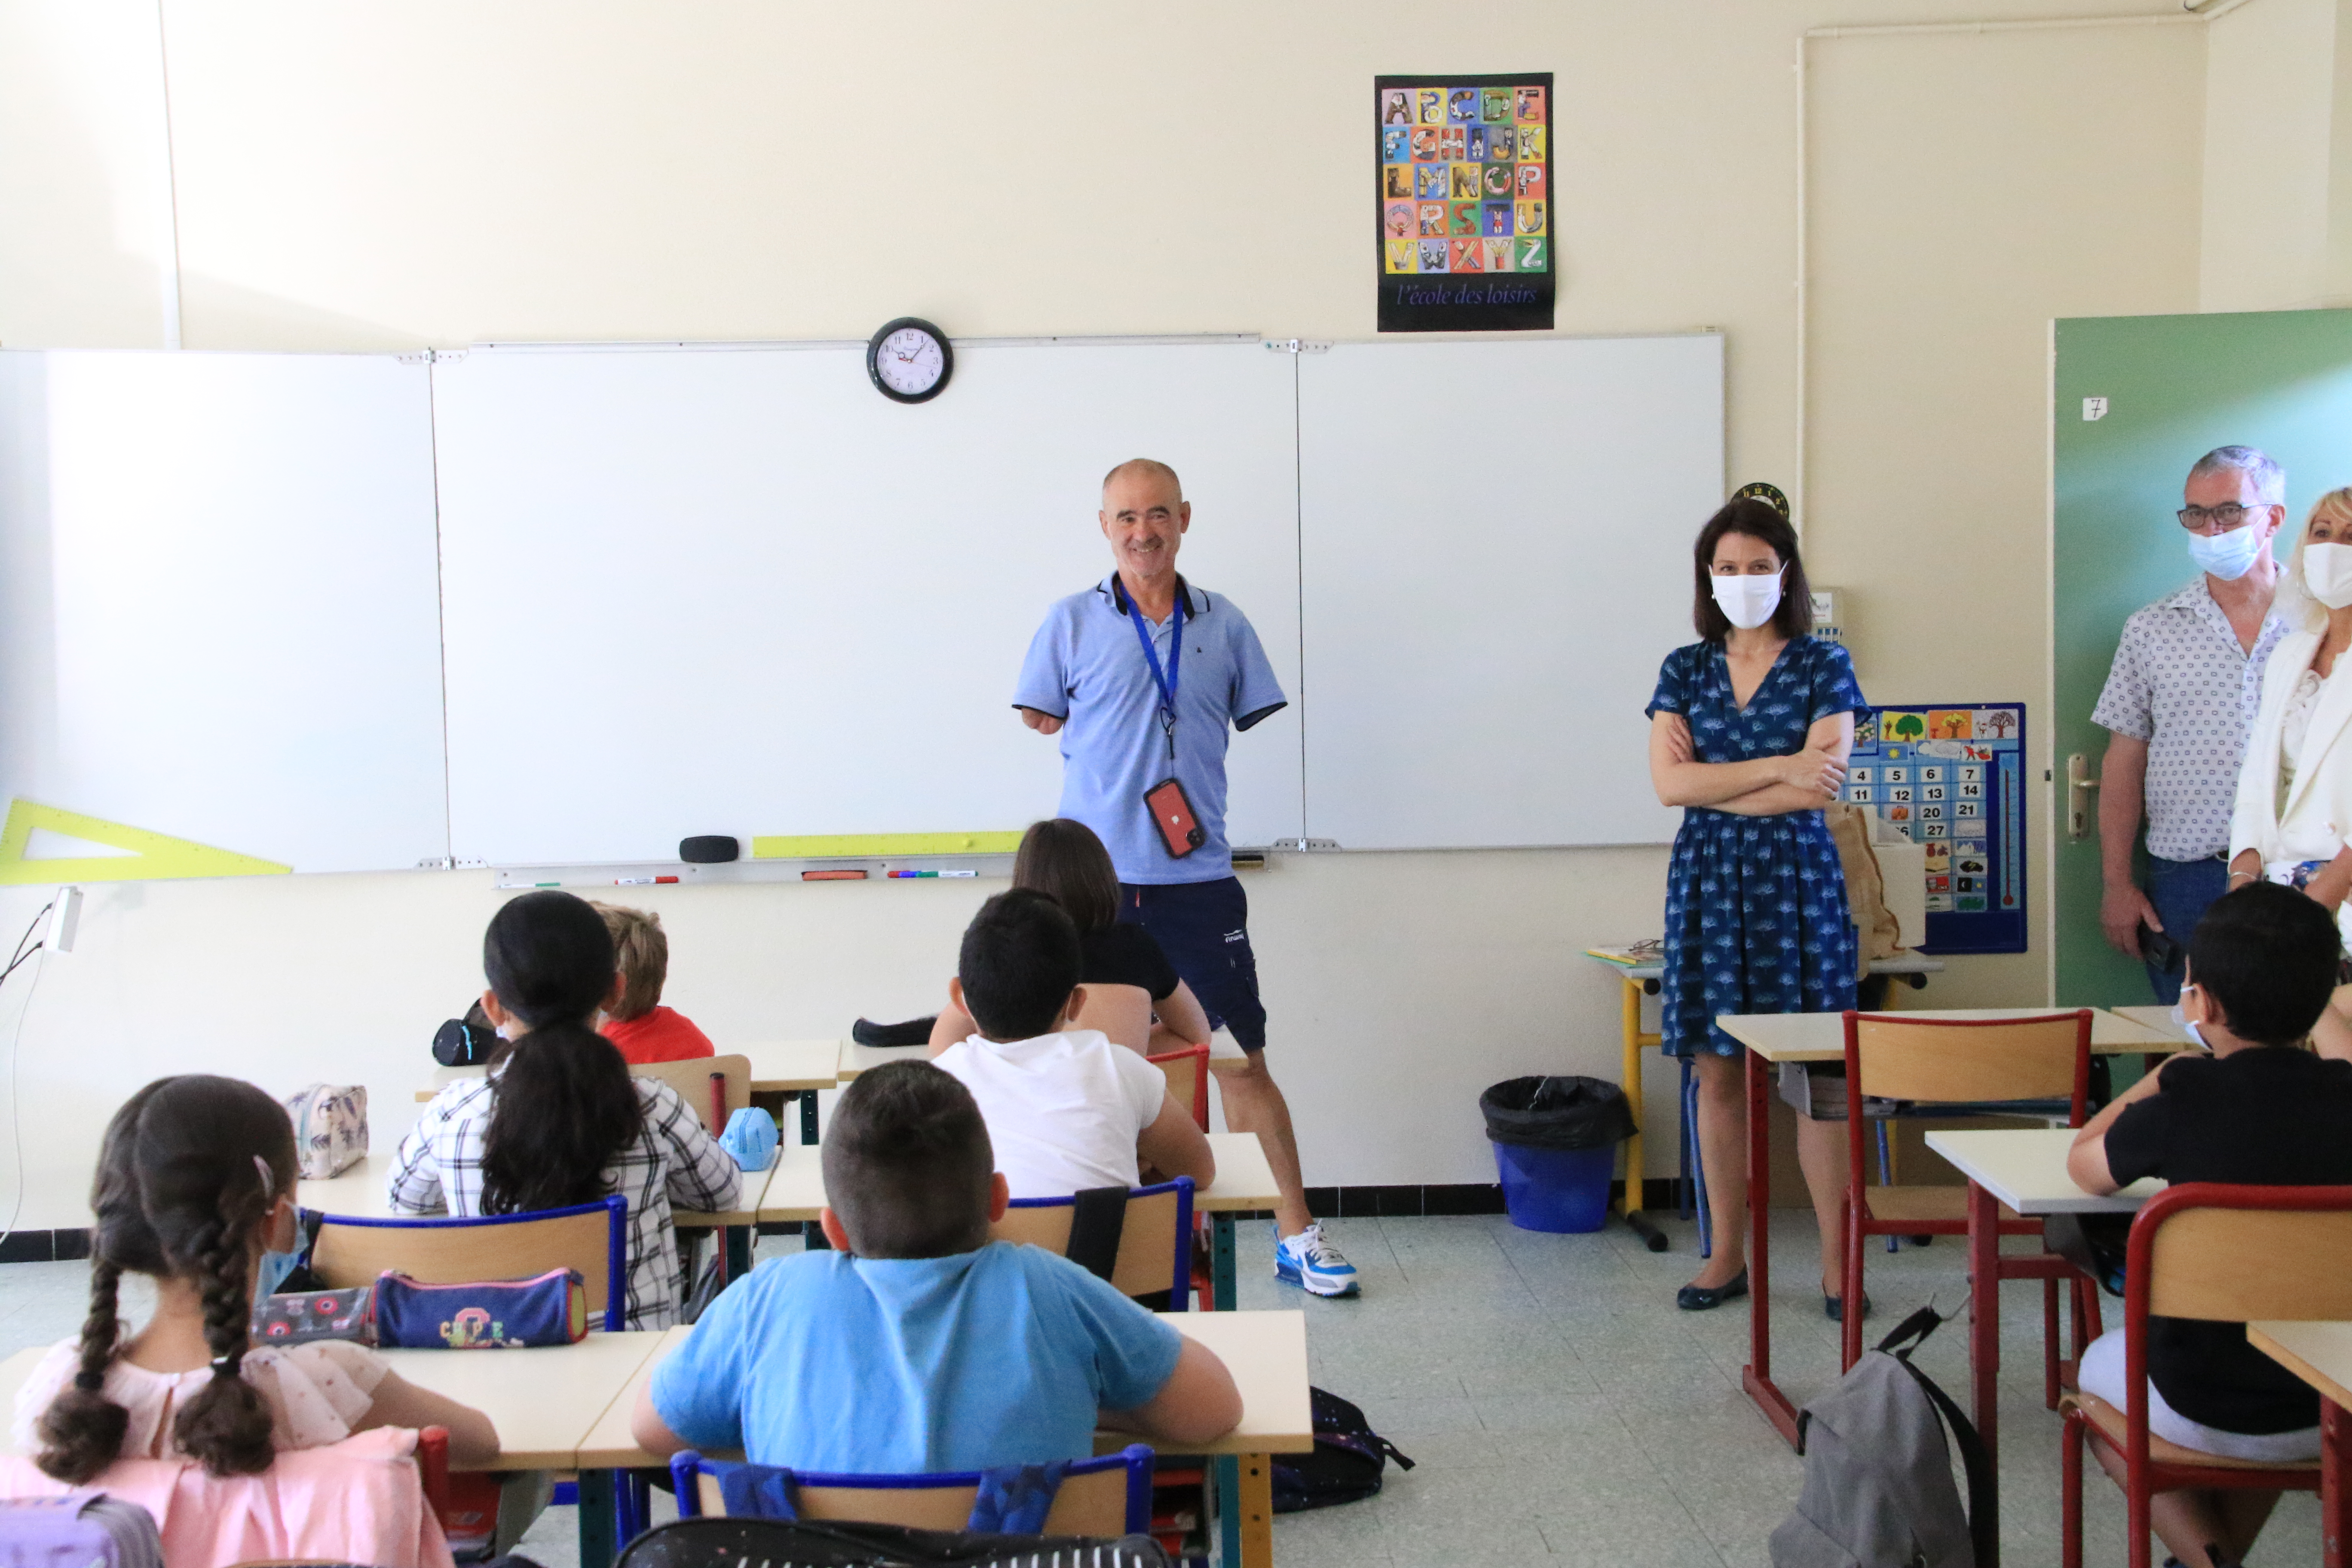 La rectrice Julie Benetti aux côtés de Thierry Corbalan dans la salle de classe avec les élèves